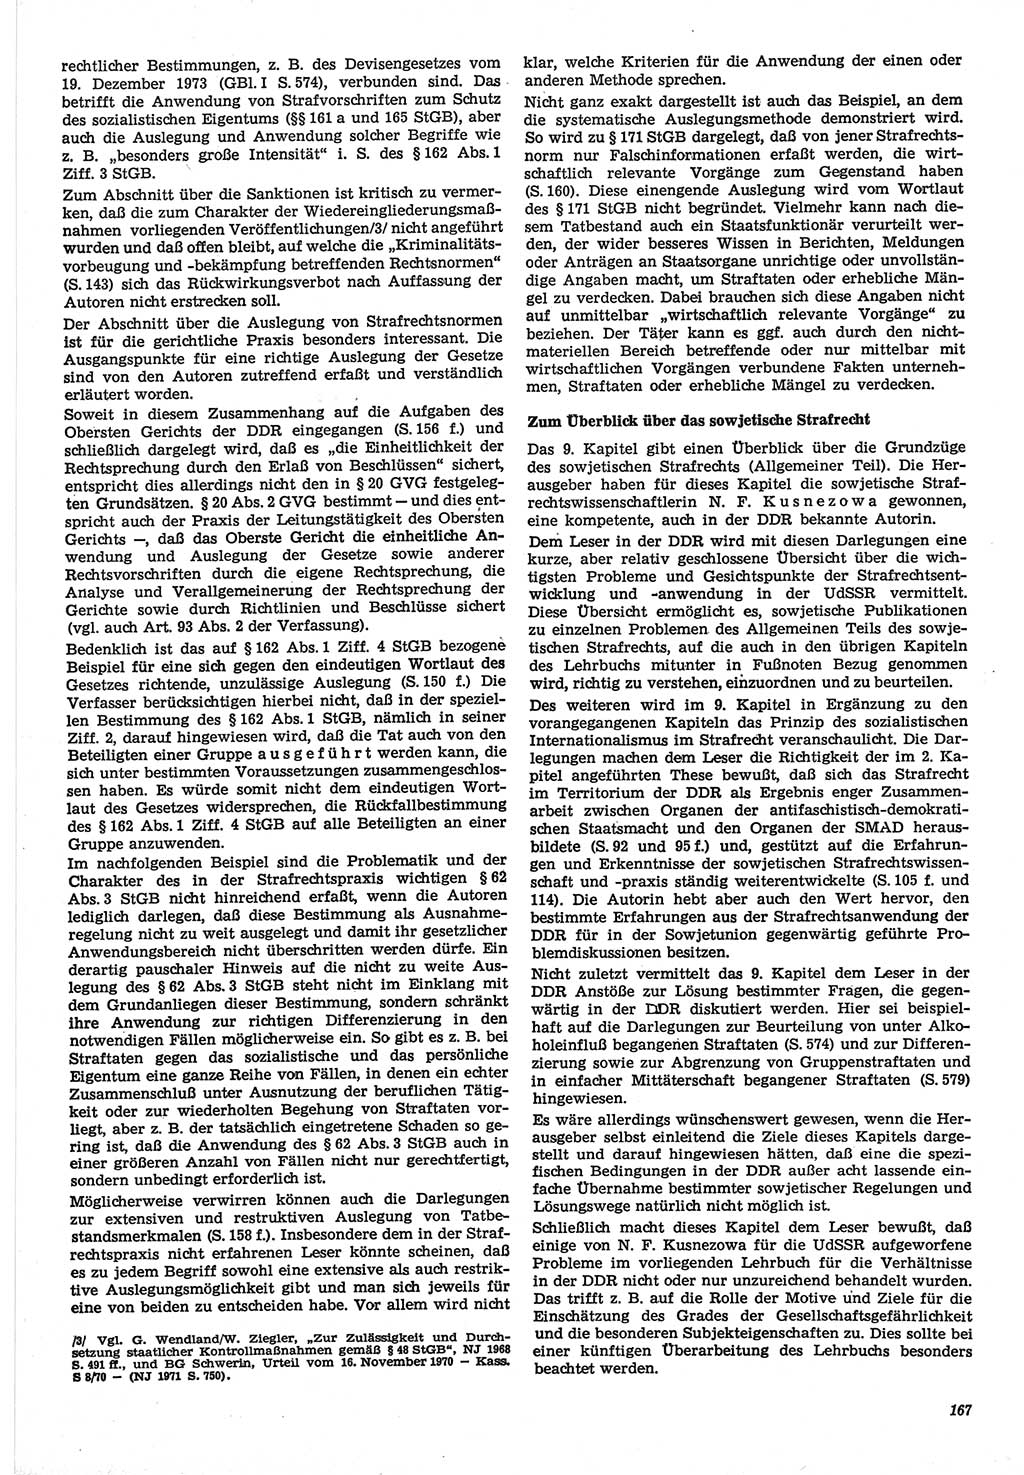 Neue Justiz (NJ), Zeitschrift für Recht und Rechtswissenschaft-Zeitschrift, sozialistisches Recht und Gesetzlichkeit, 31. Jahrgang 1977, Seite 167 (NJ DDR 1977, S. 167)